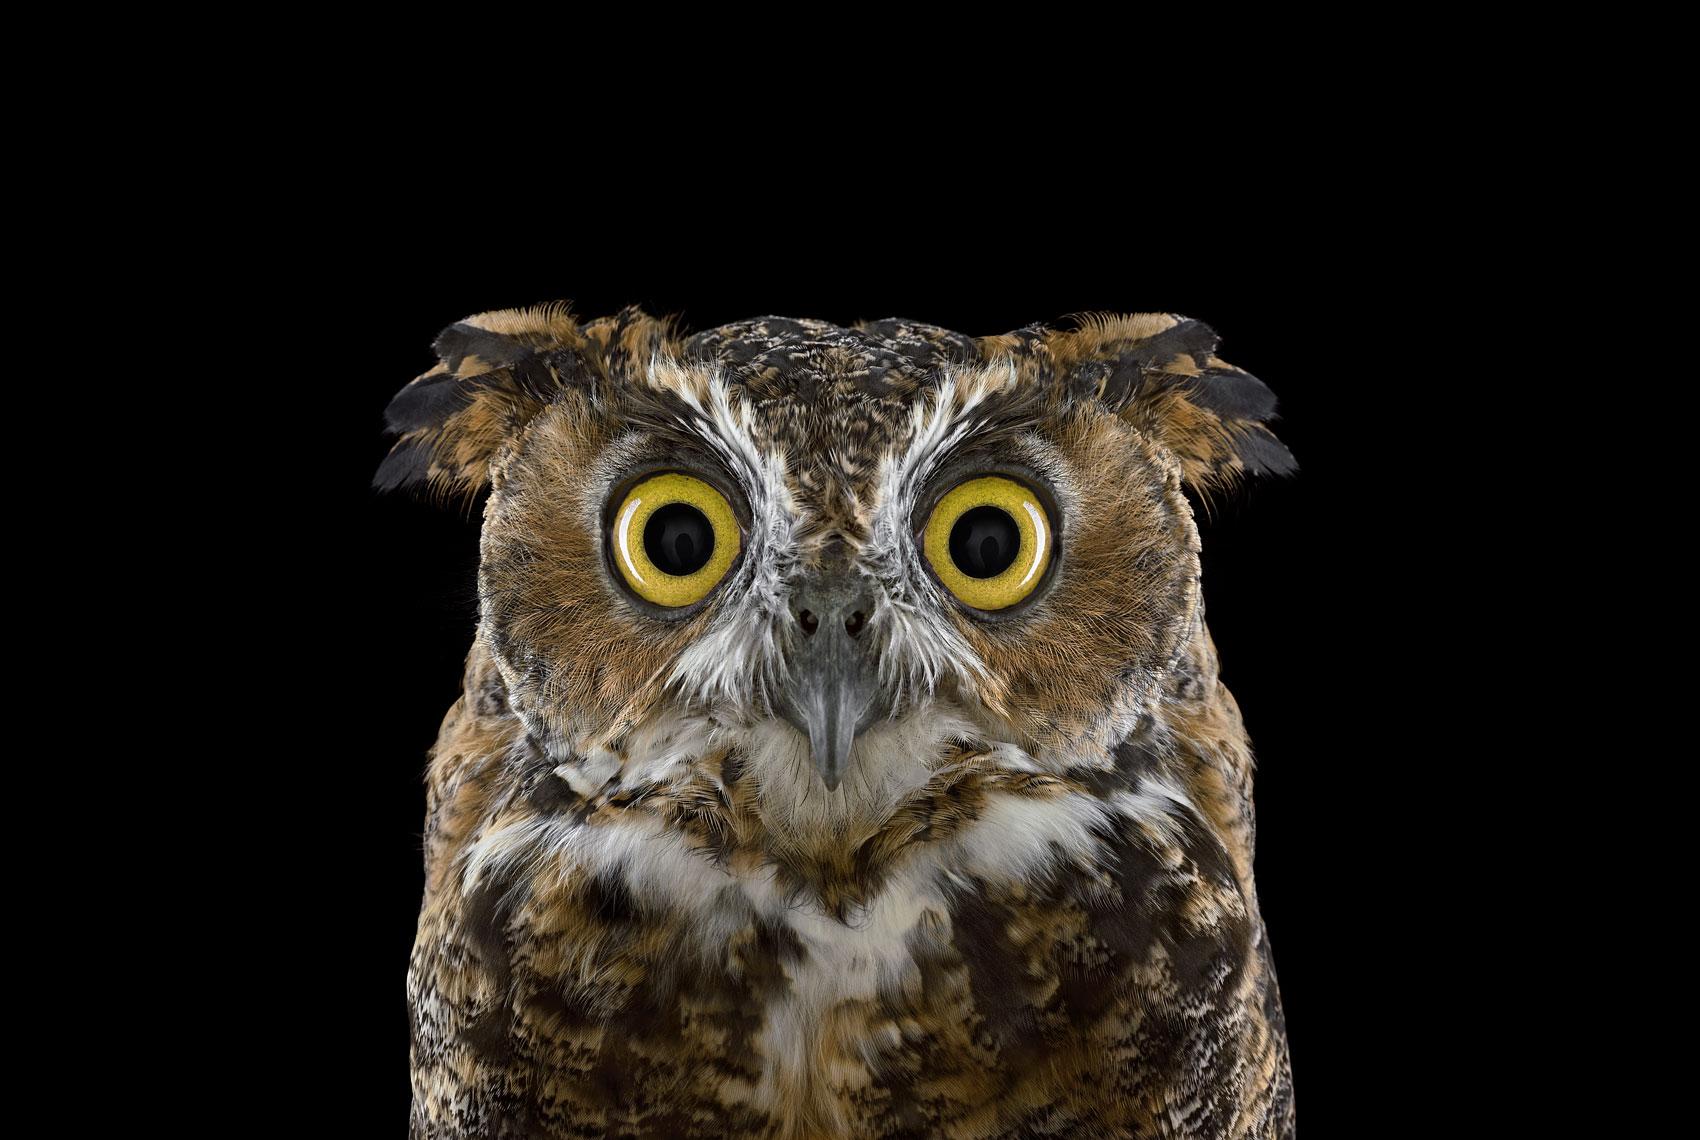 Great Horned Owl #3, Espanola, NM, 2011" ist eine limitierte Auflage eines Fotos des zeitgenössischen Künstlers Brad Wilson aus der Serie "Affinity", die Studio-Porträts von Wildtieren zeigt. 

Dieses Foto wird nur als ungerahmter Abzug verkauft. Es